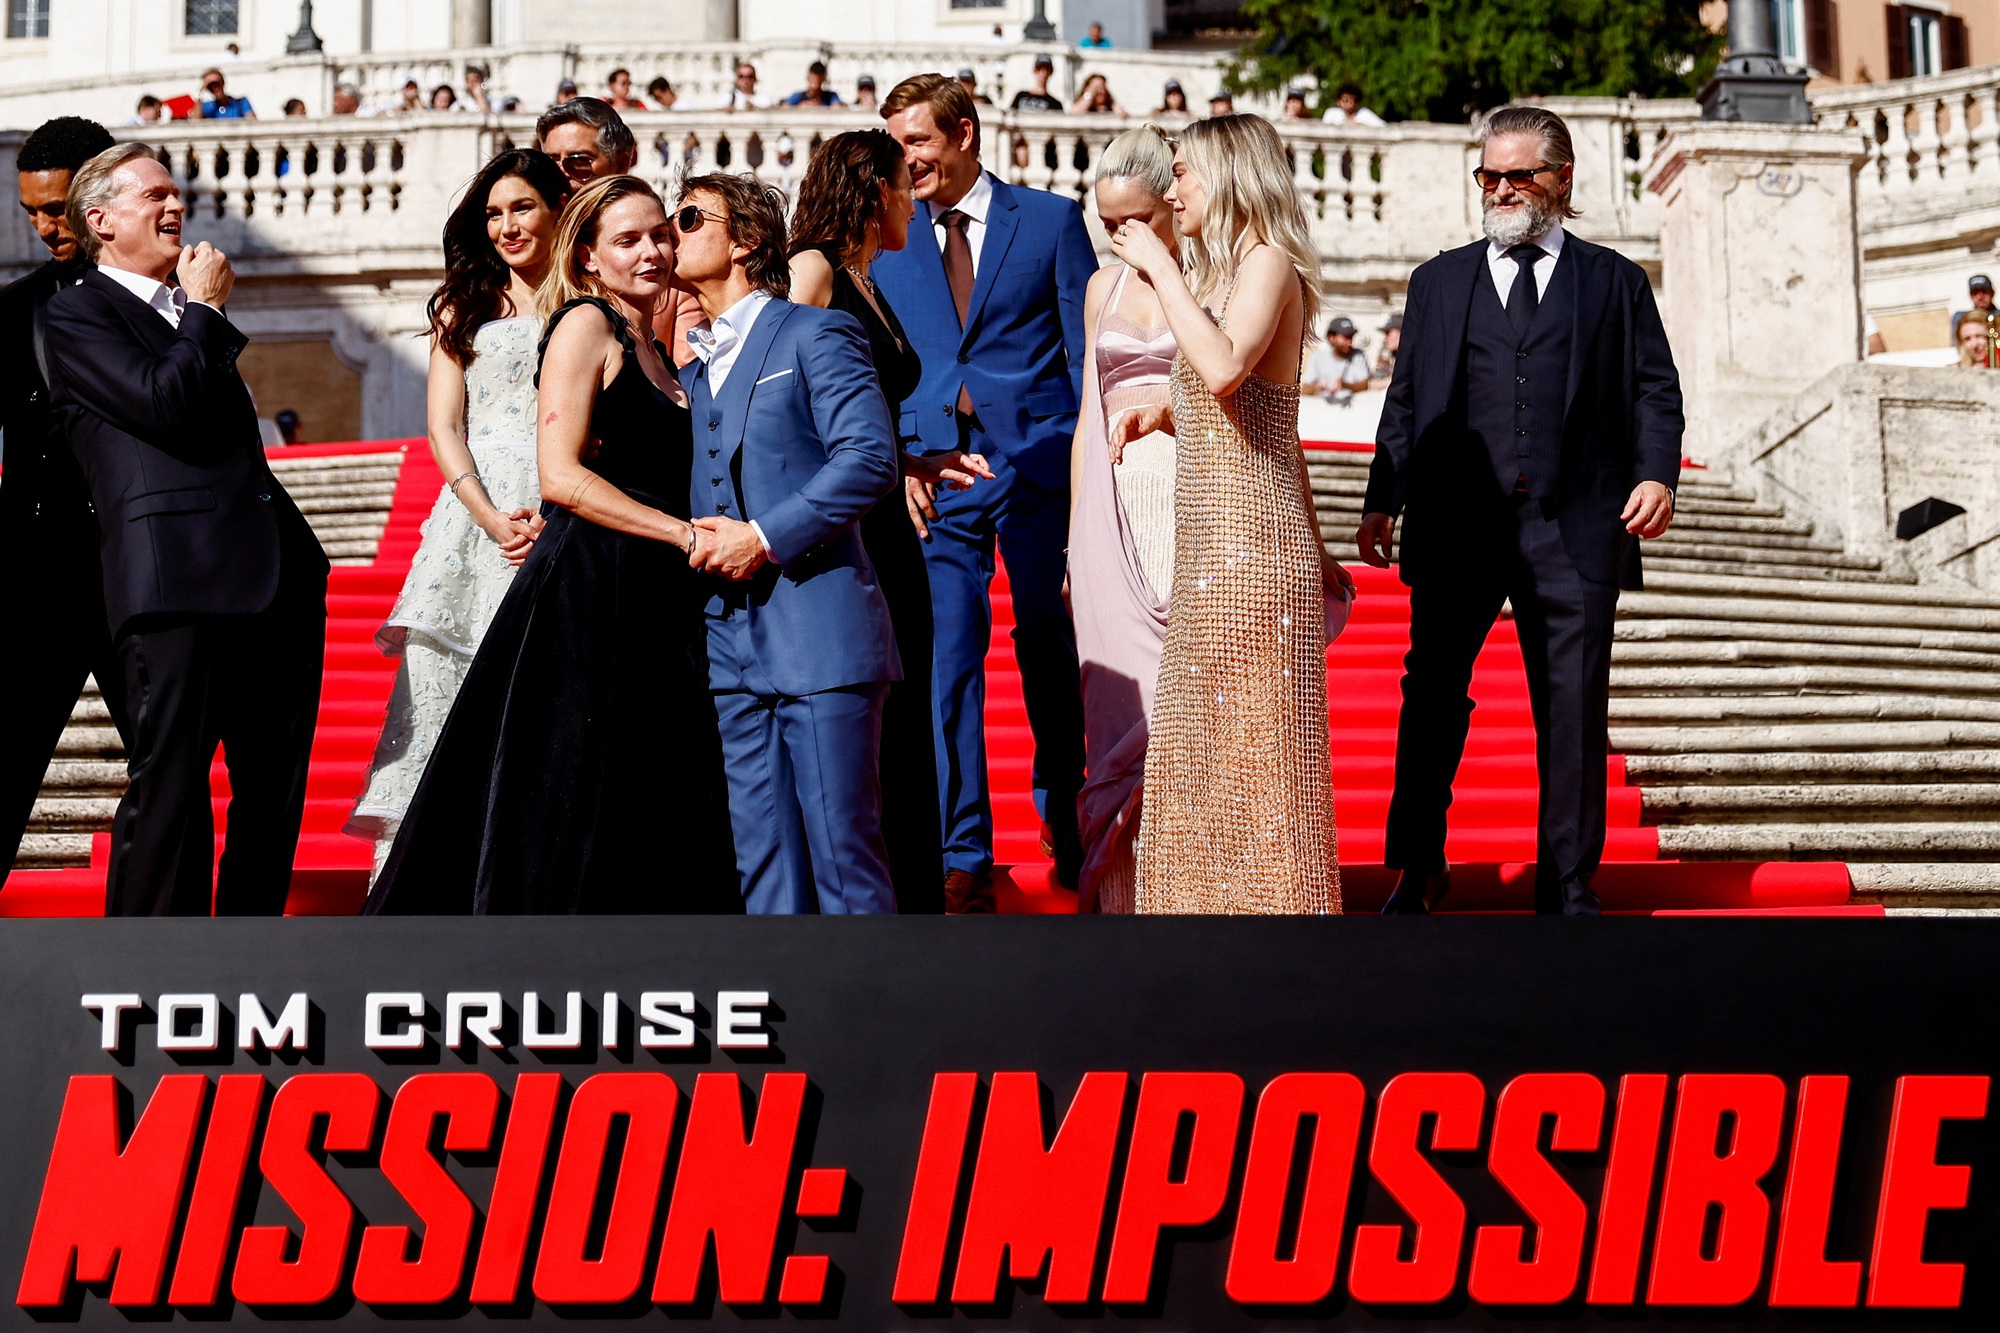 Tom Cruise hôn người đẹp trên thảm đỏ - Ảnh 9.